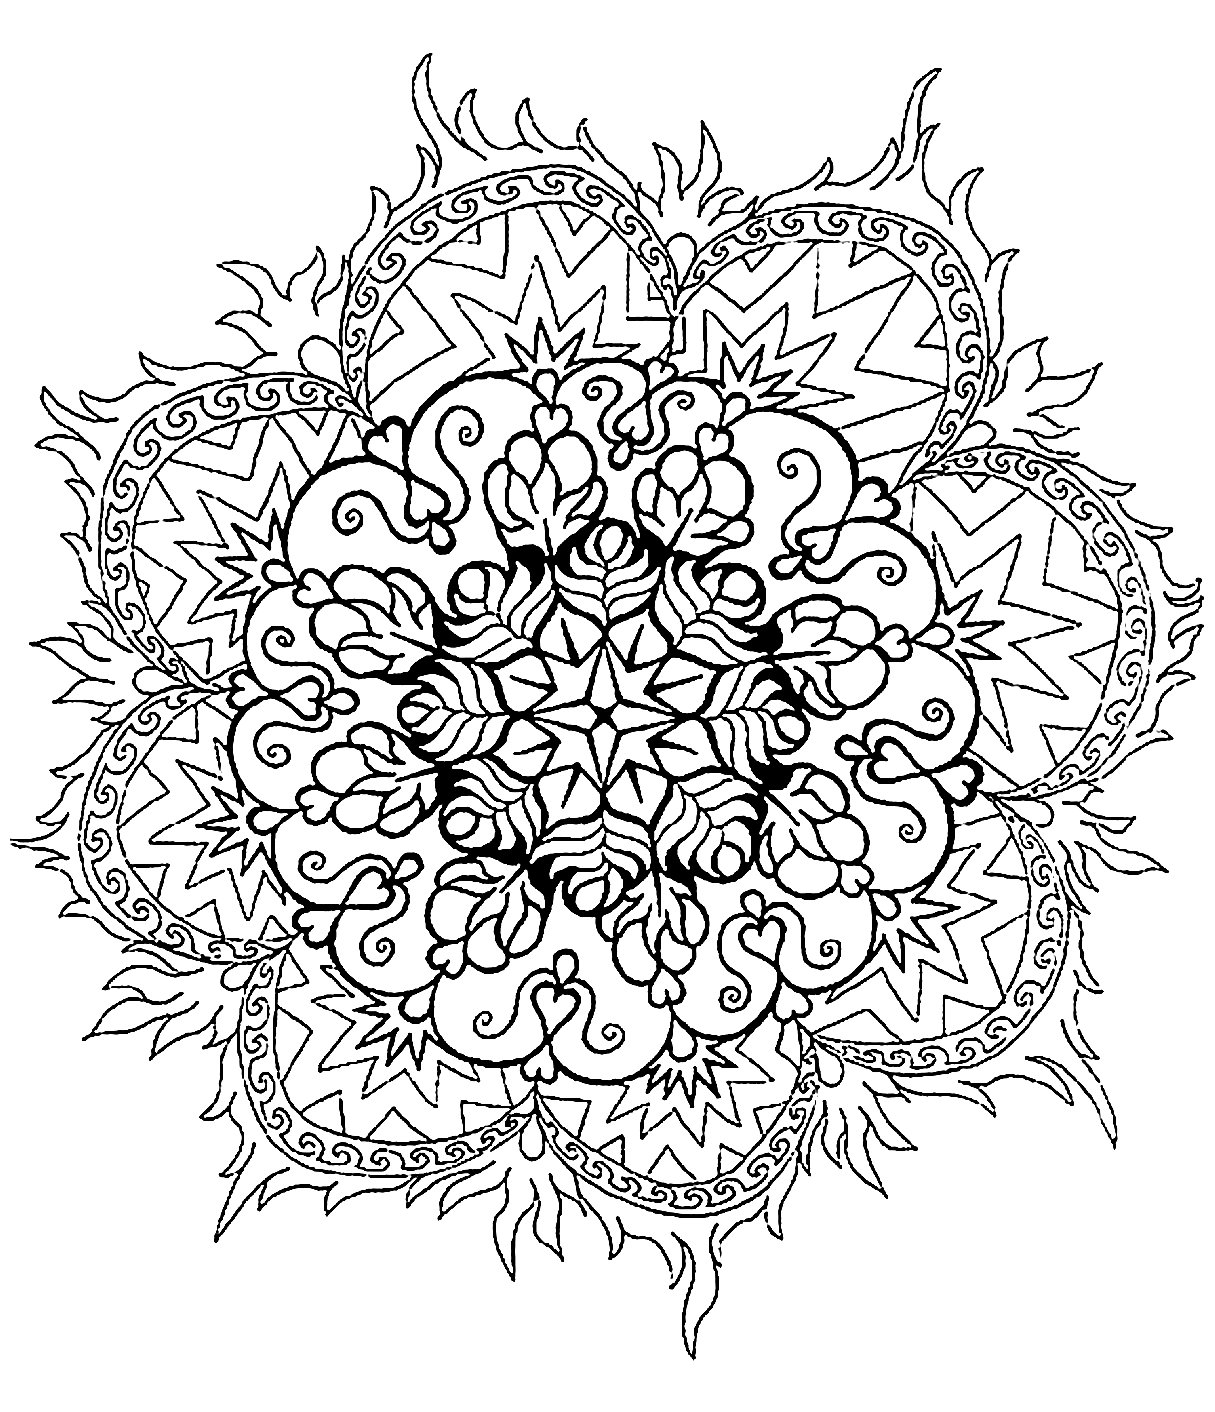 Coloriage de mandala avec plusieurs différents arcs de cercles ainsi qu'une très jolie fleur au centre de celui-ci. Difficile à colorier.